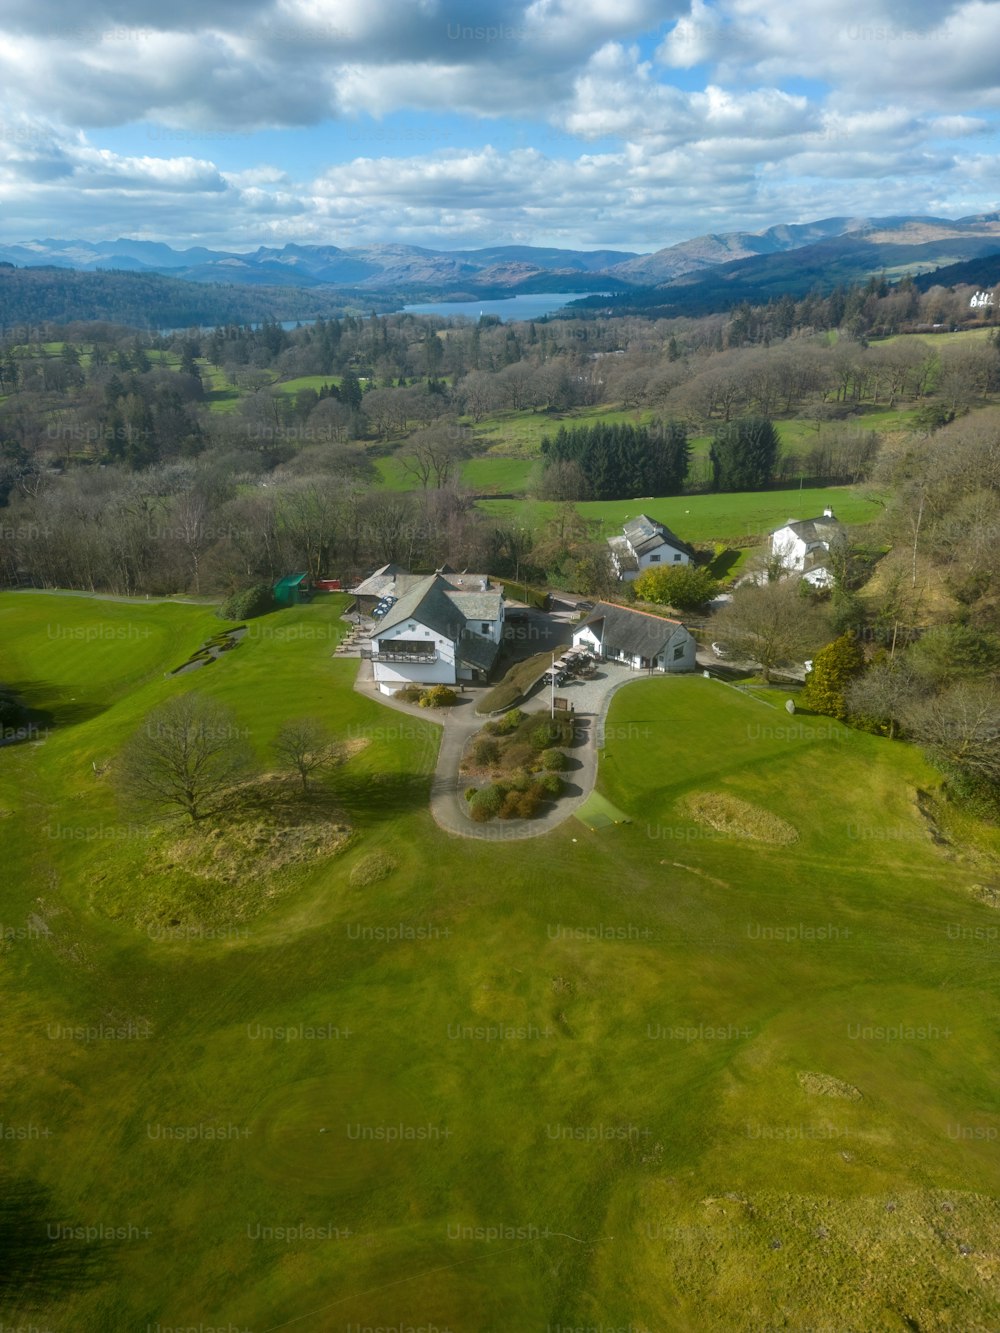 une vue aérienne d’une maison entourée de champs verdoyants